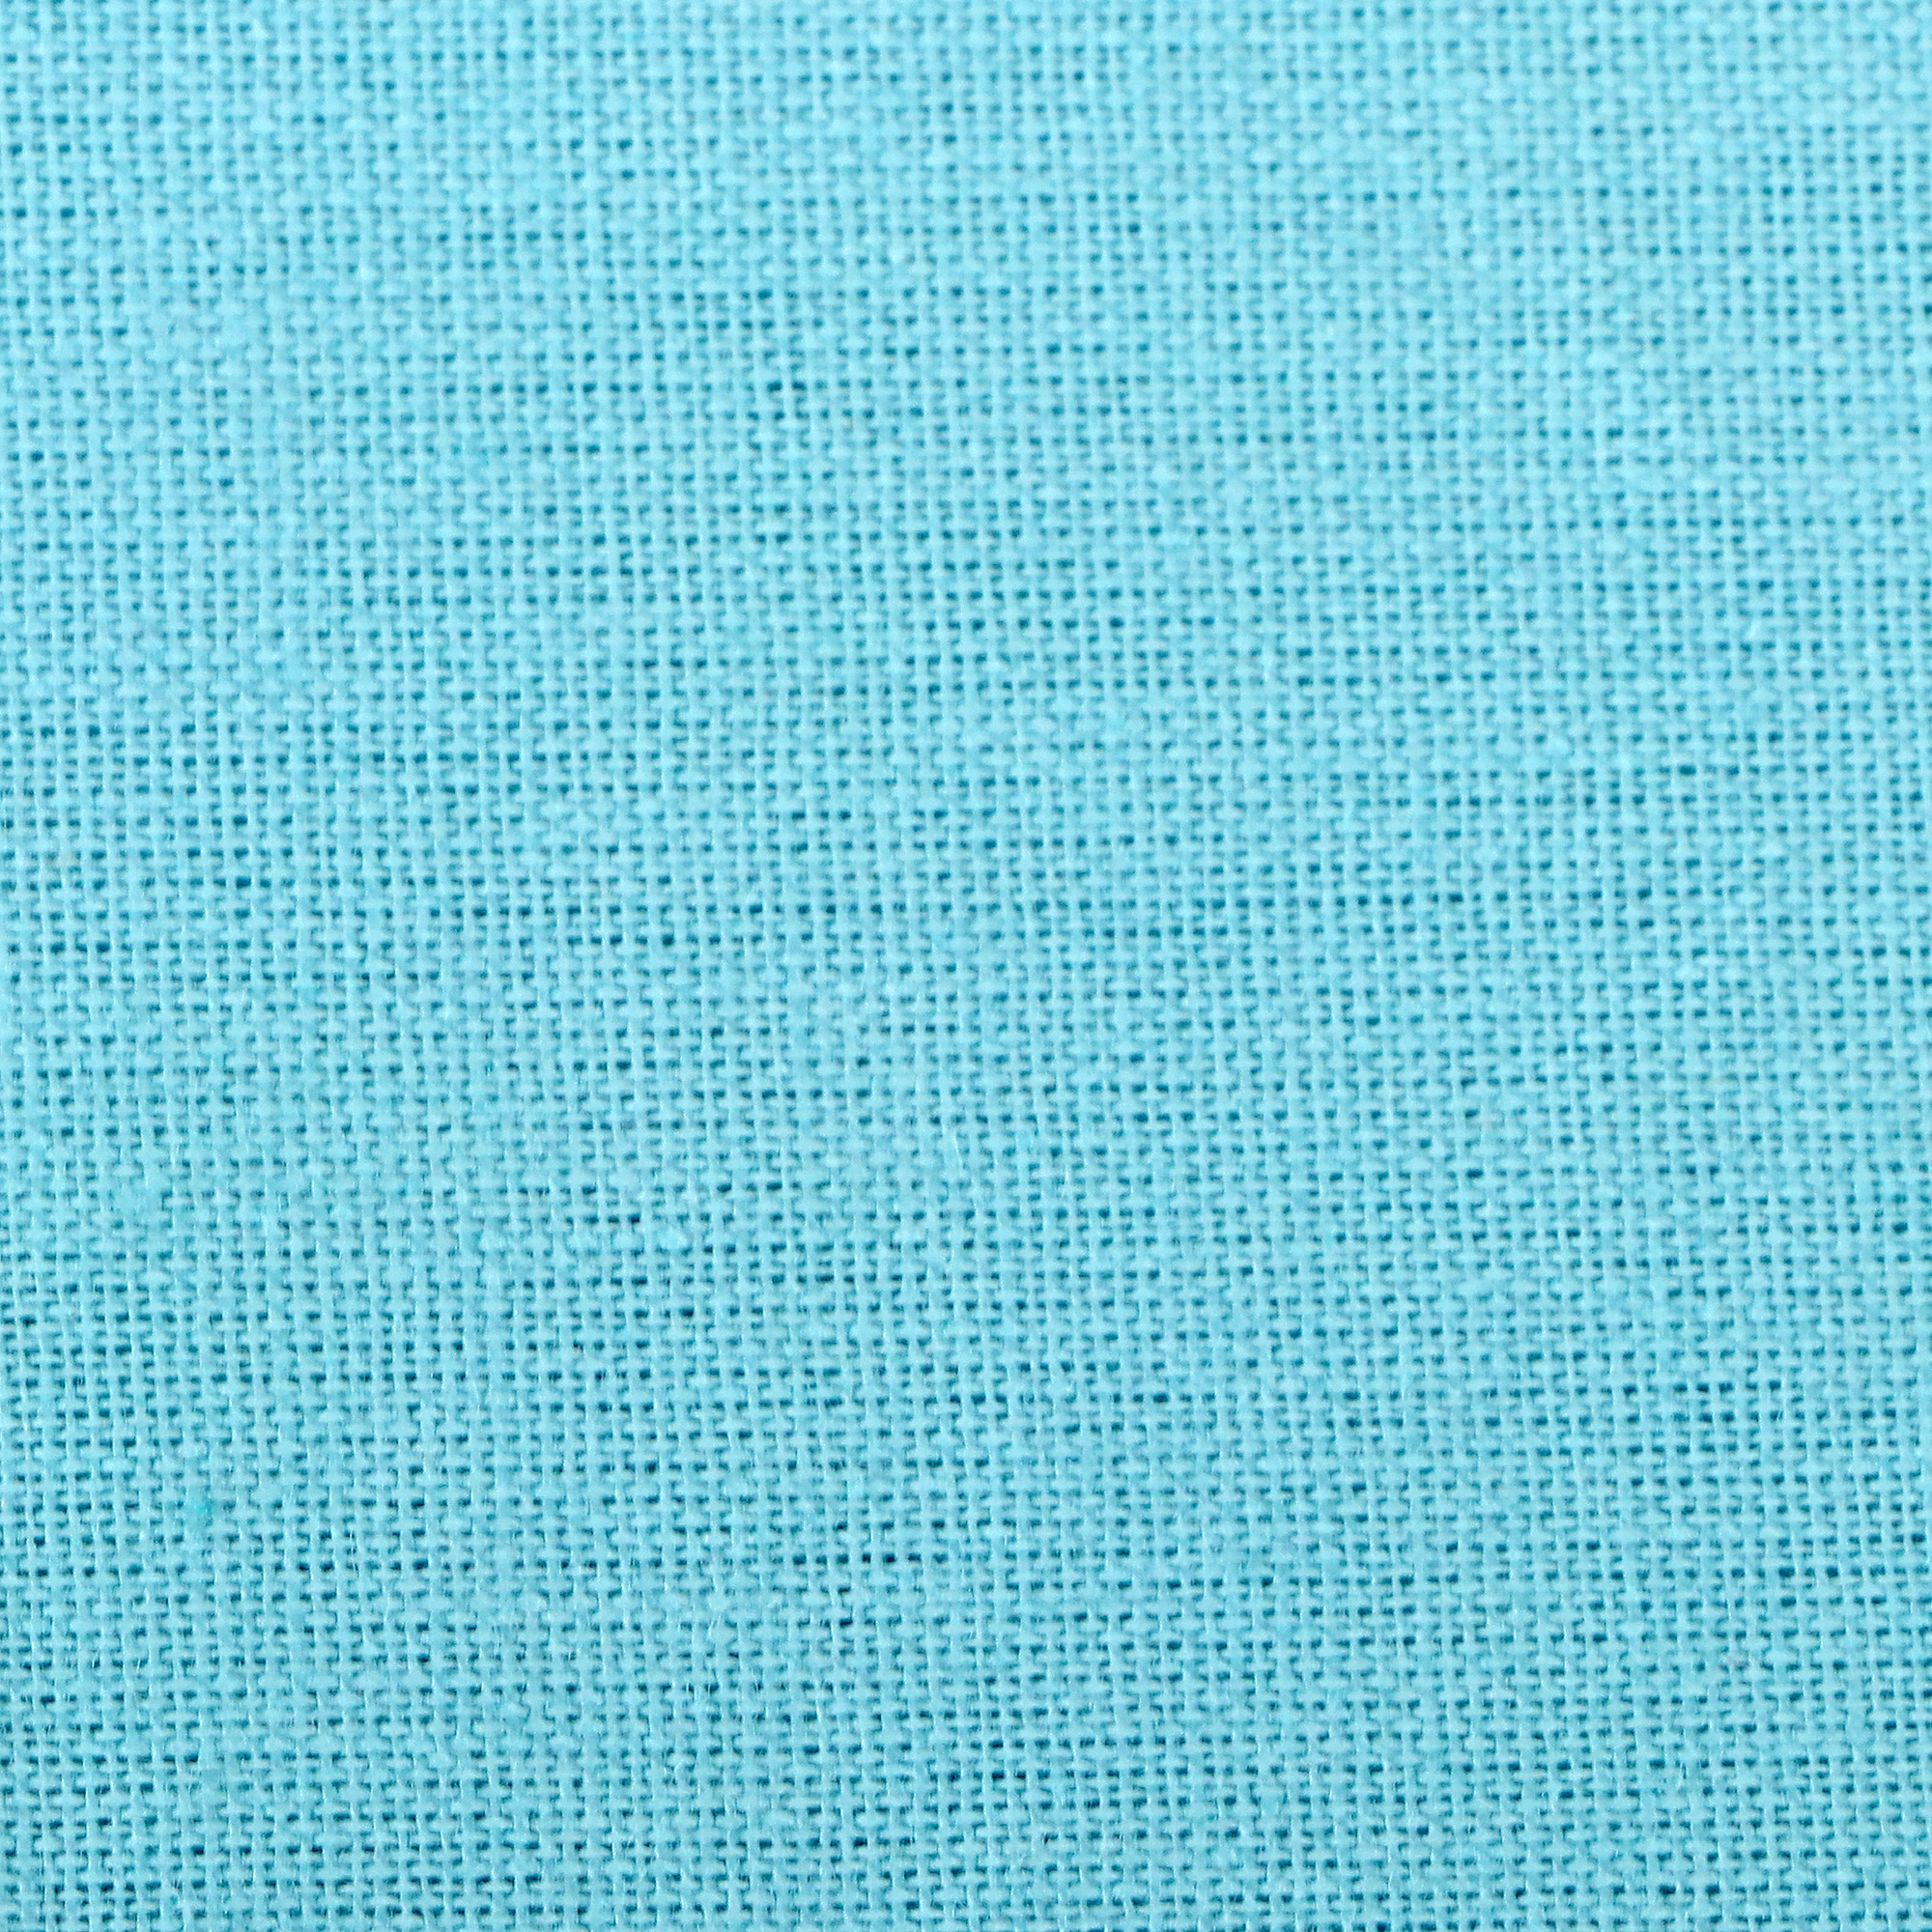 Комплект постельного белья La Besse Ранфорс синий Кинг сайз, размер Кинг сайз - фото 4